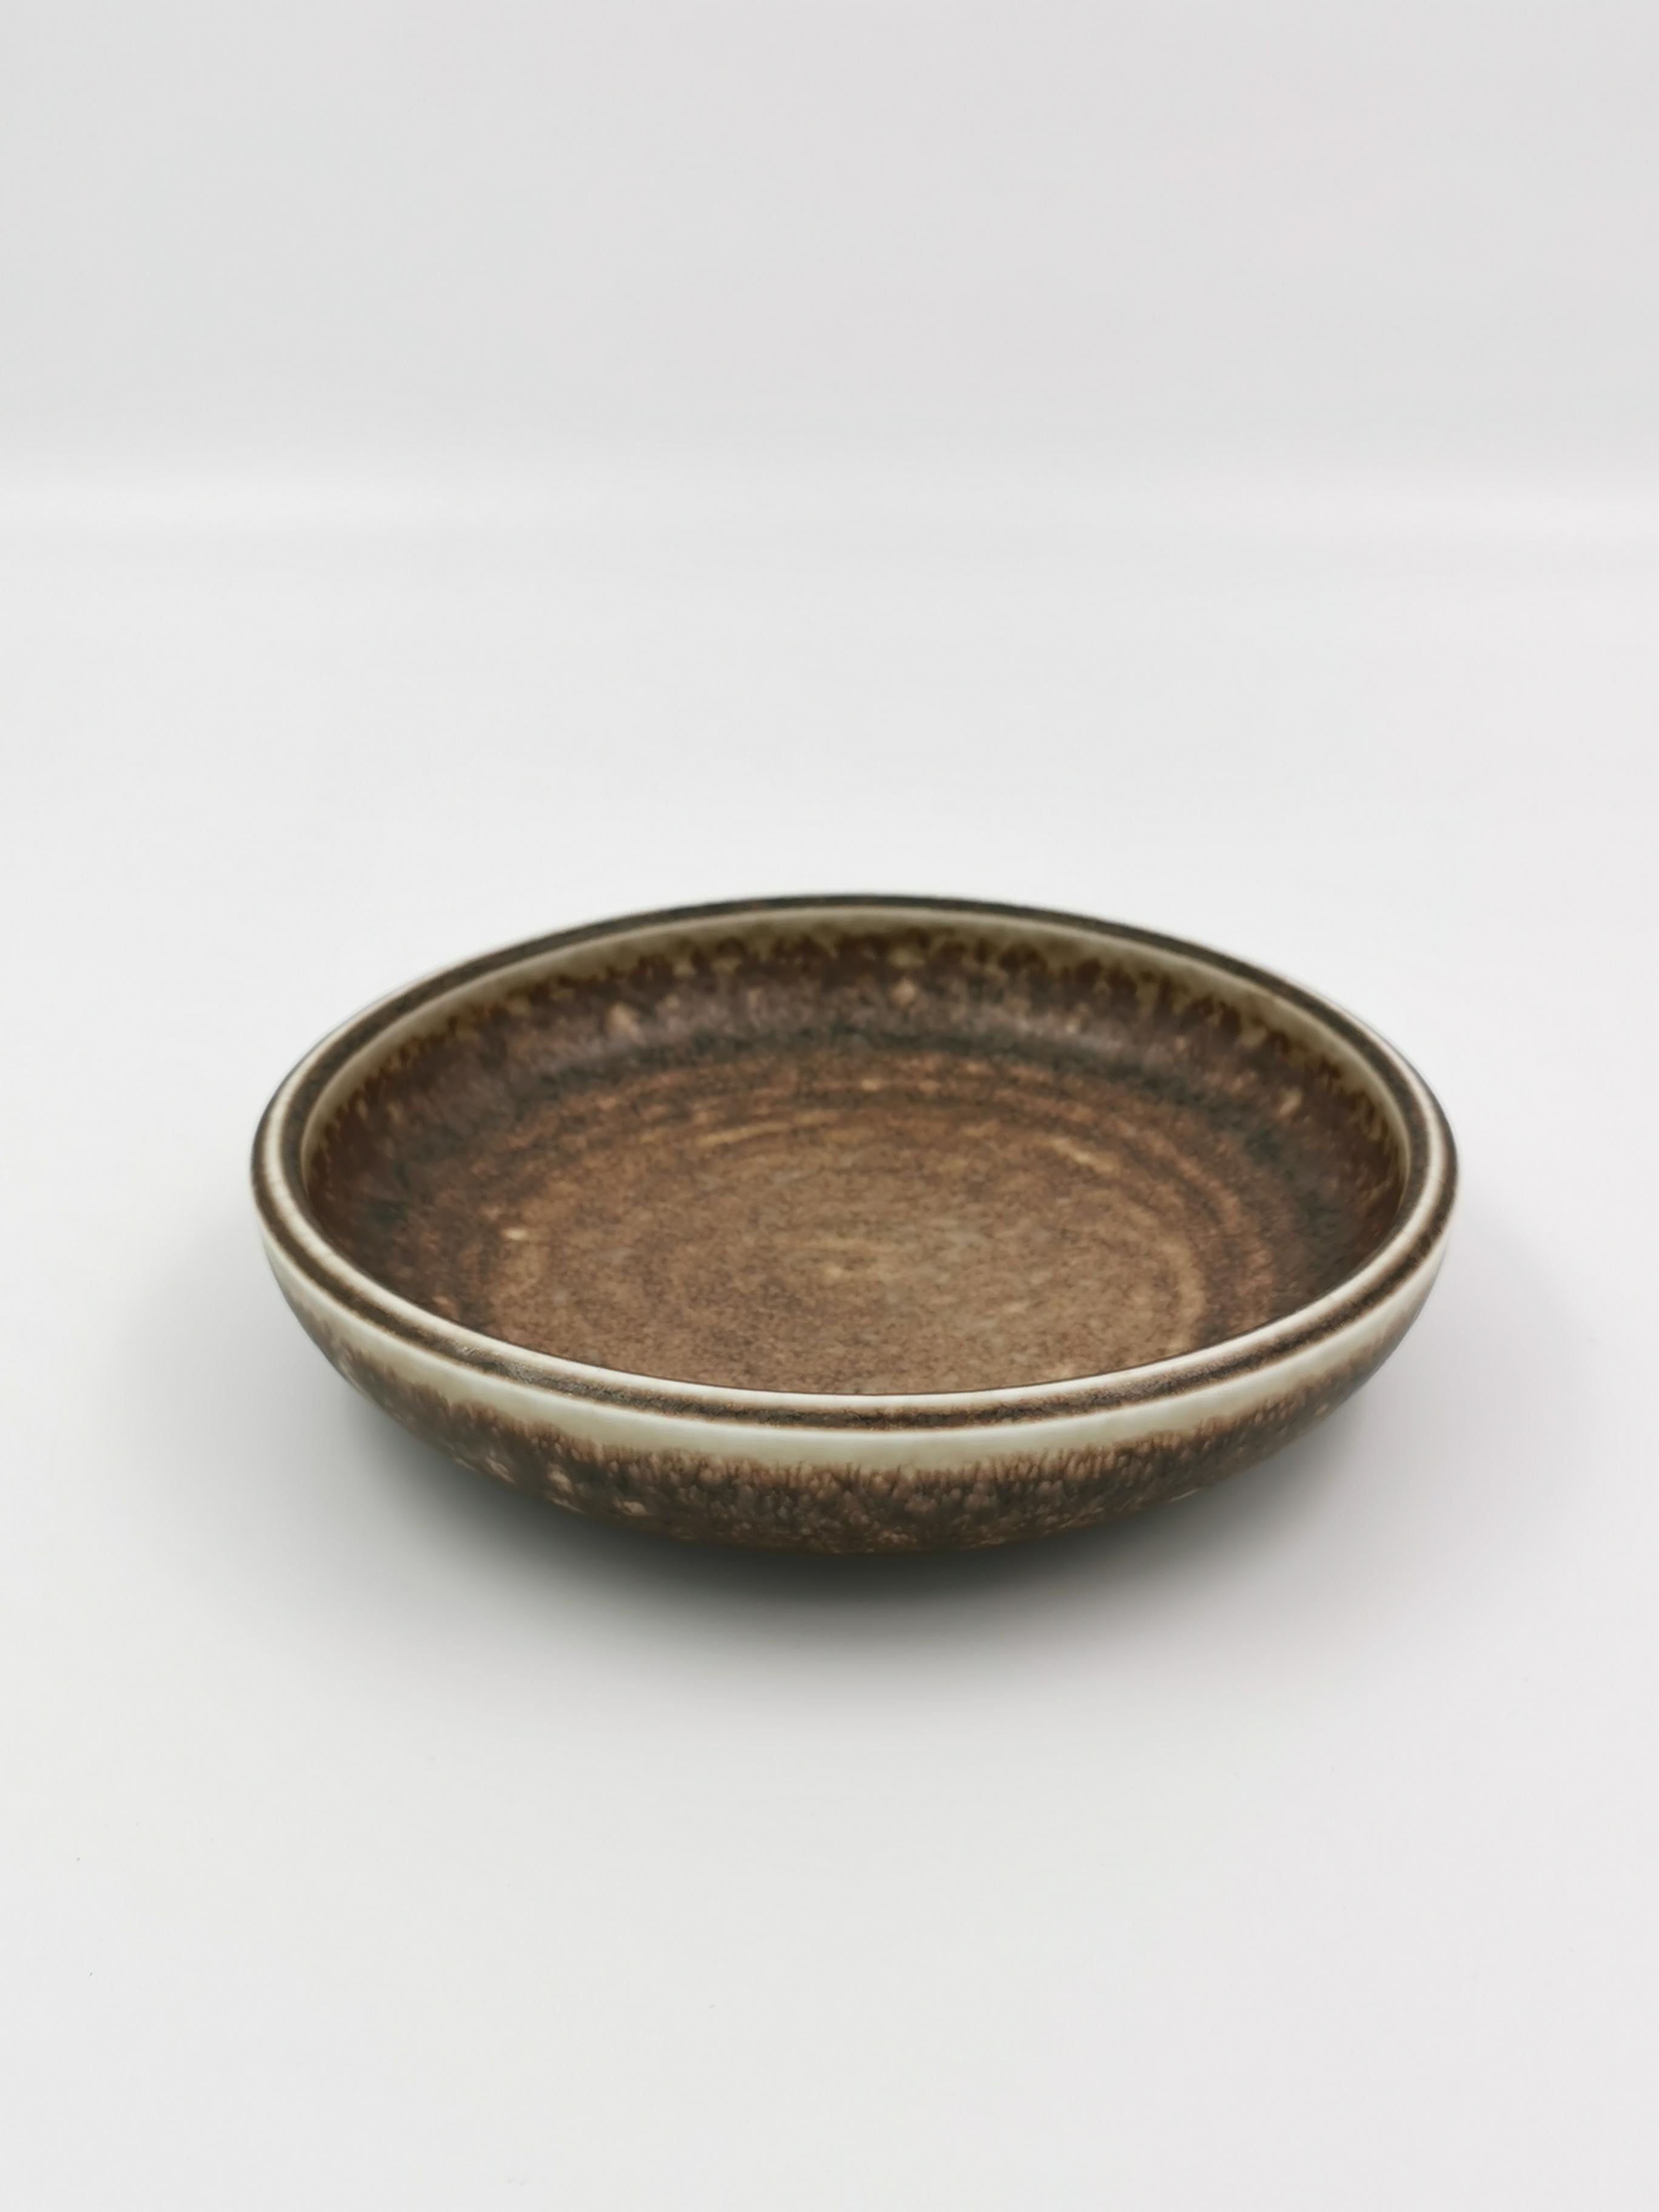 Scandinavian Modern Midcentury Ceramic Bowl by Carl-Harry Stålhane for Rörstrand, 1950s For Sale